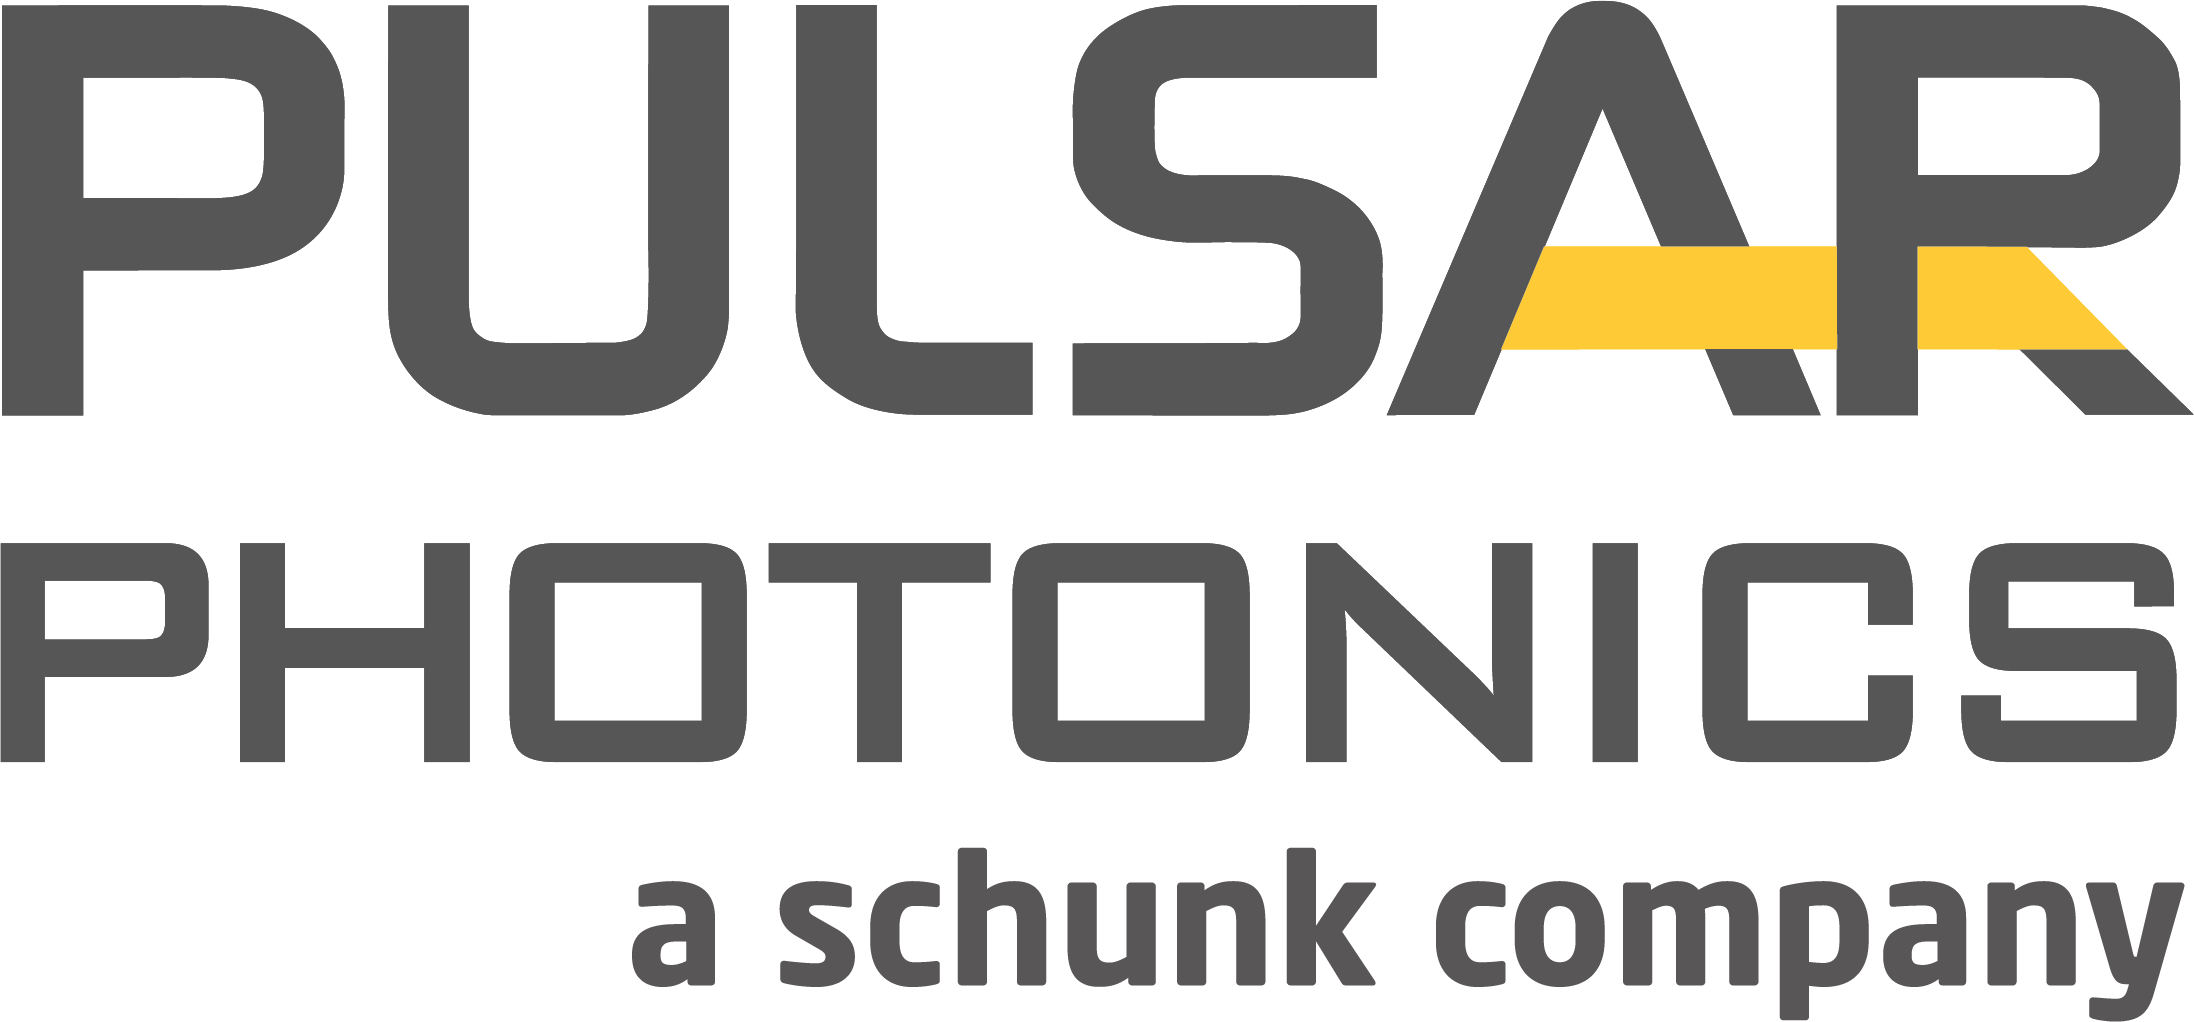 Pulsar Photonics a schunk company PNG